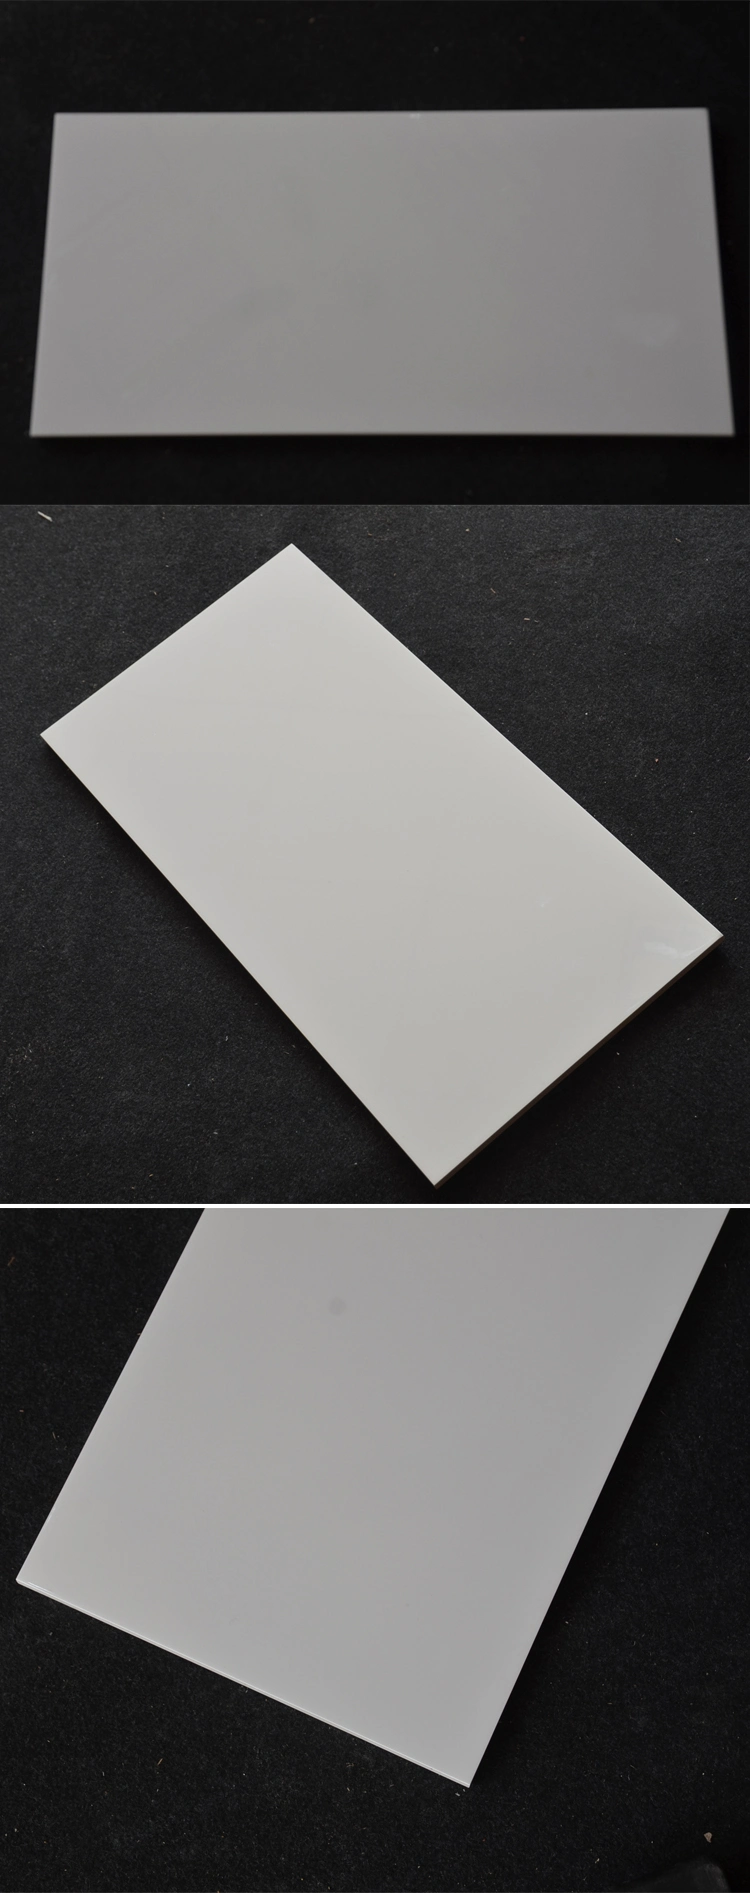 Modern Different Types of Backsplash Kitchen Wall Tile Design Patterns